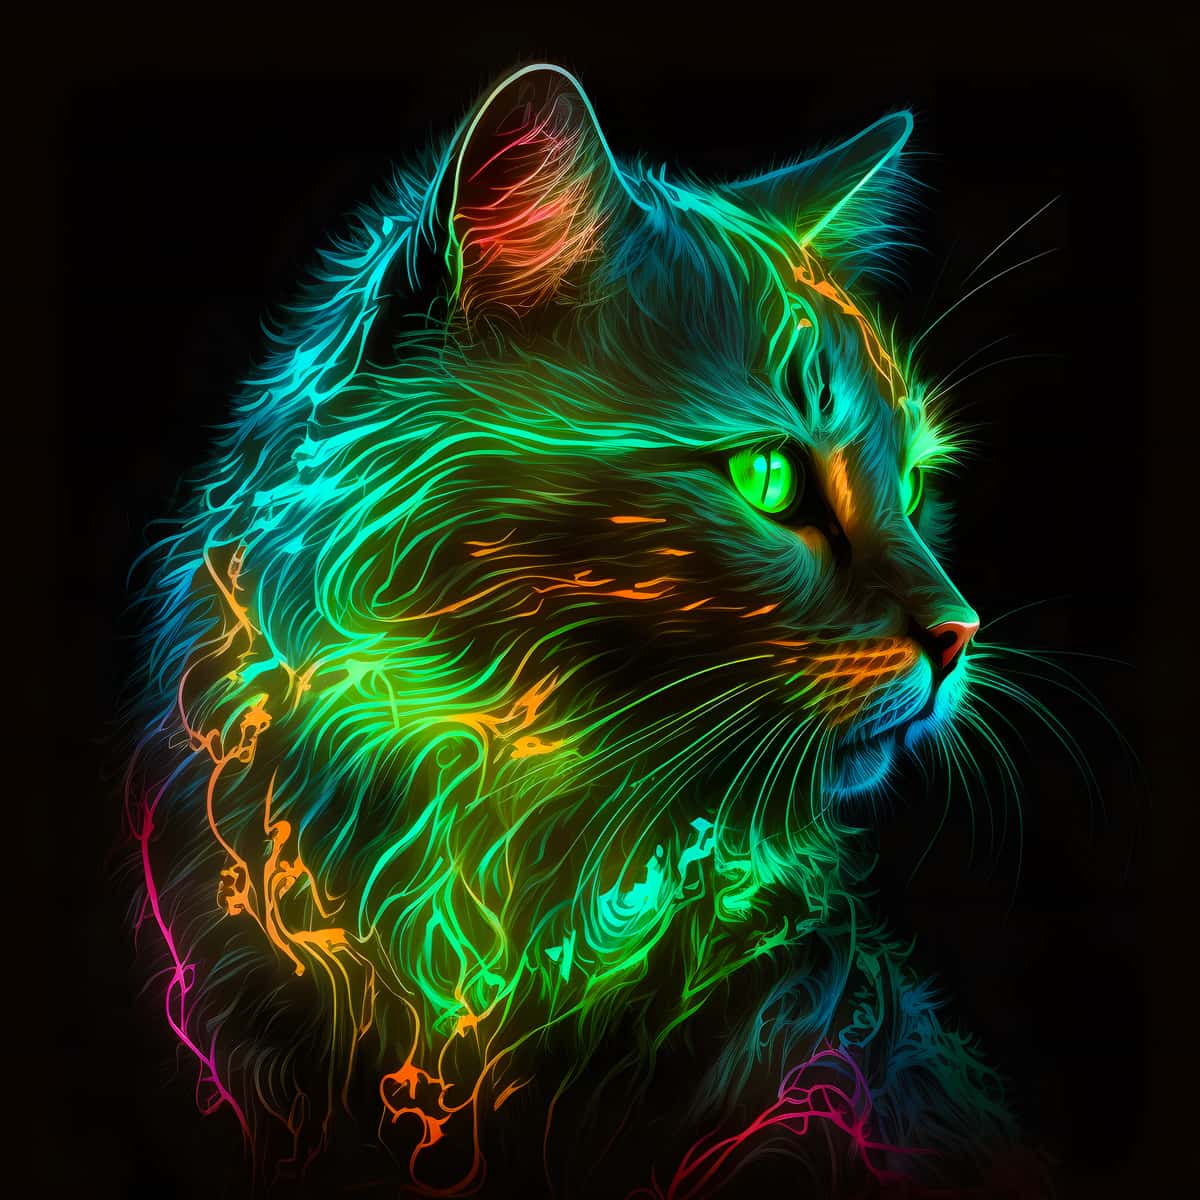 AB Diamond Painting - Katze Neon Grün - gedruckt in Ultra-HD - AB Diamond, Katze, Neu eingetroffen, Quadratisch, Tiere